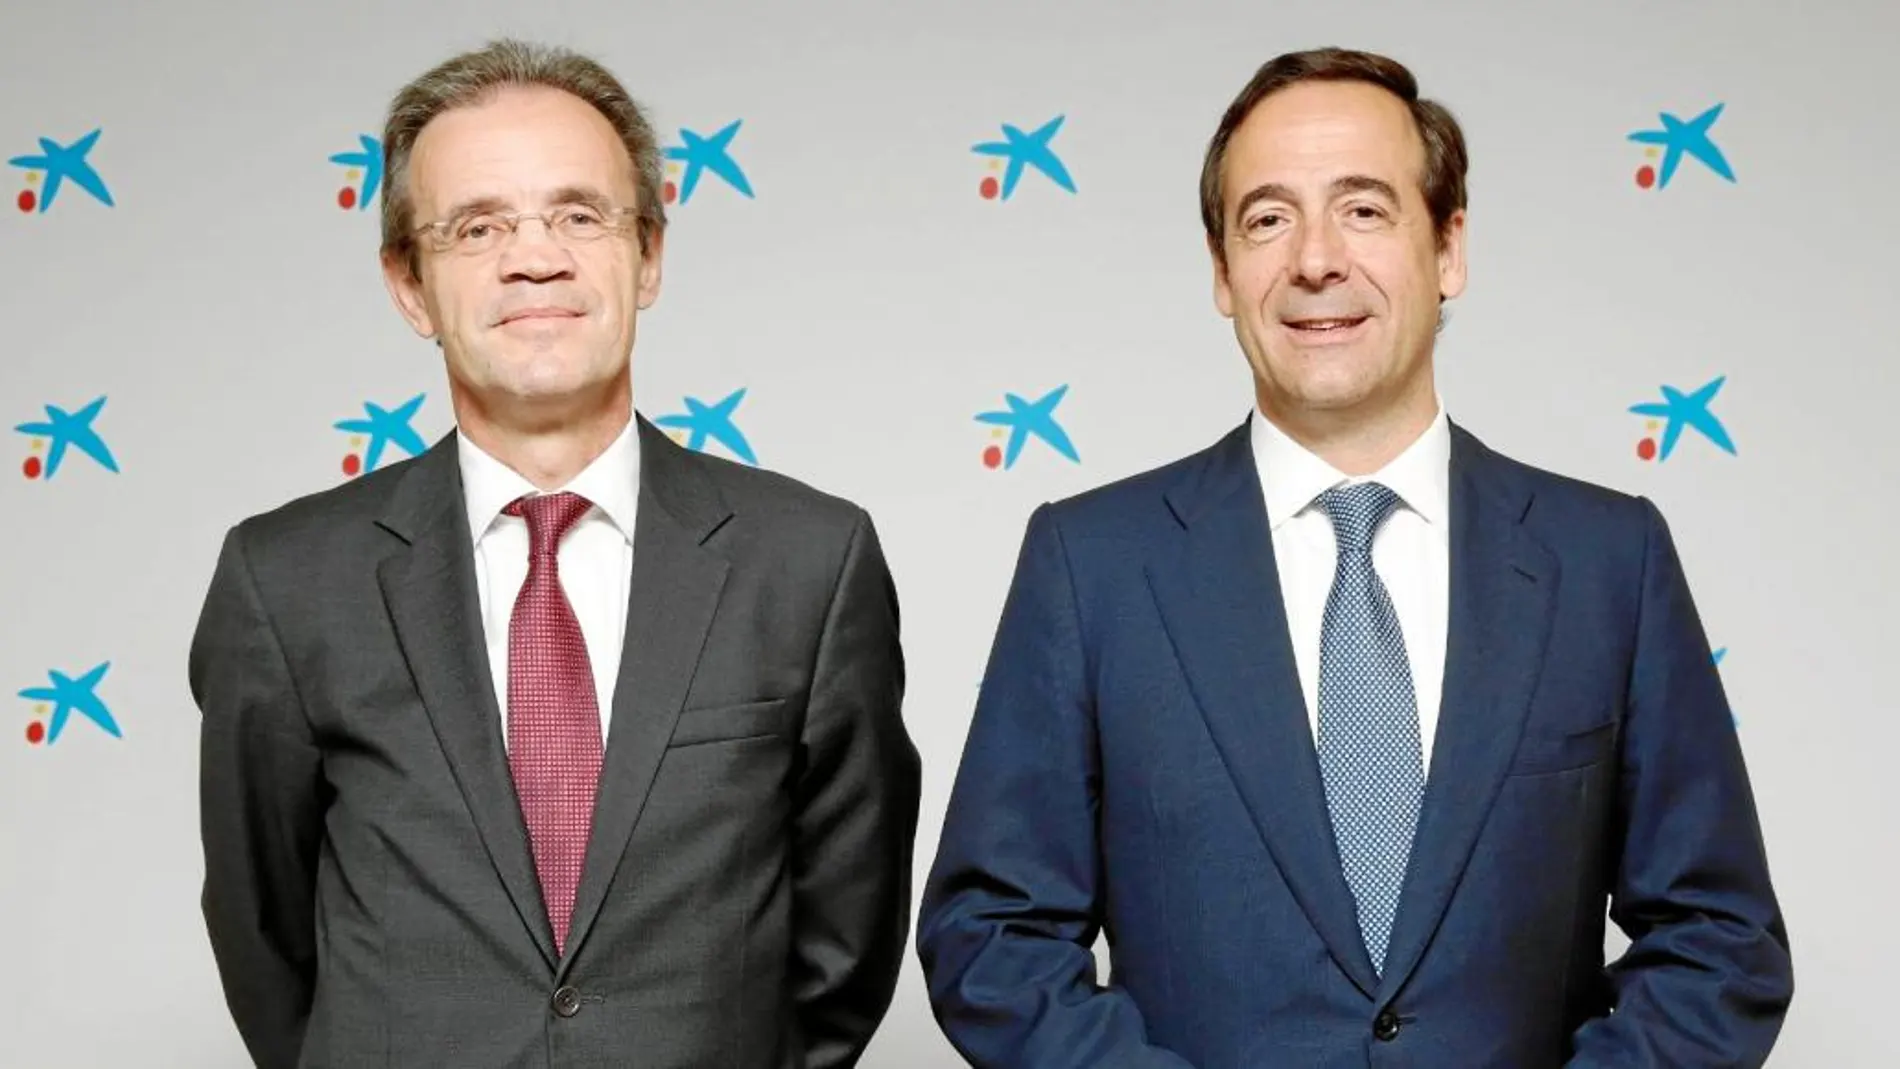 El presidente de CaixaBank, Jordi Gual, junto al consejero delegado, Gonzalo Gortázar